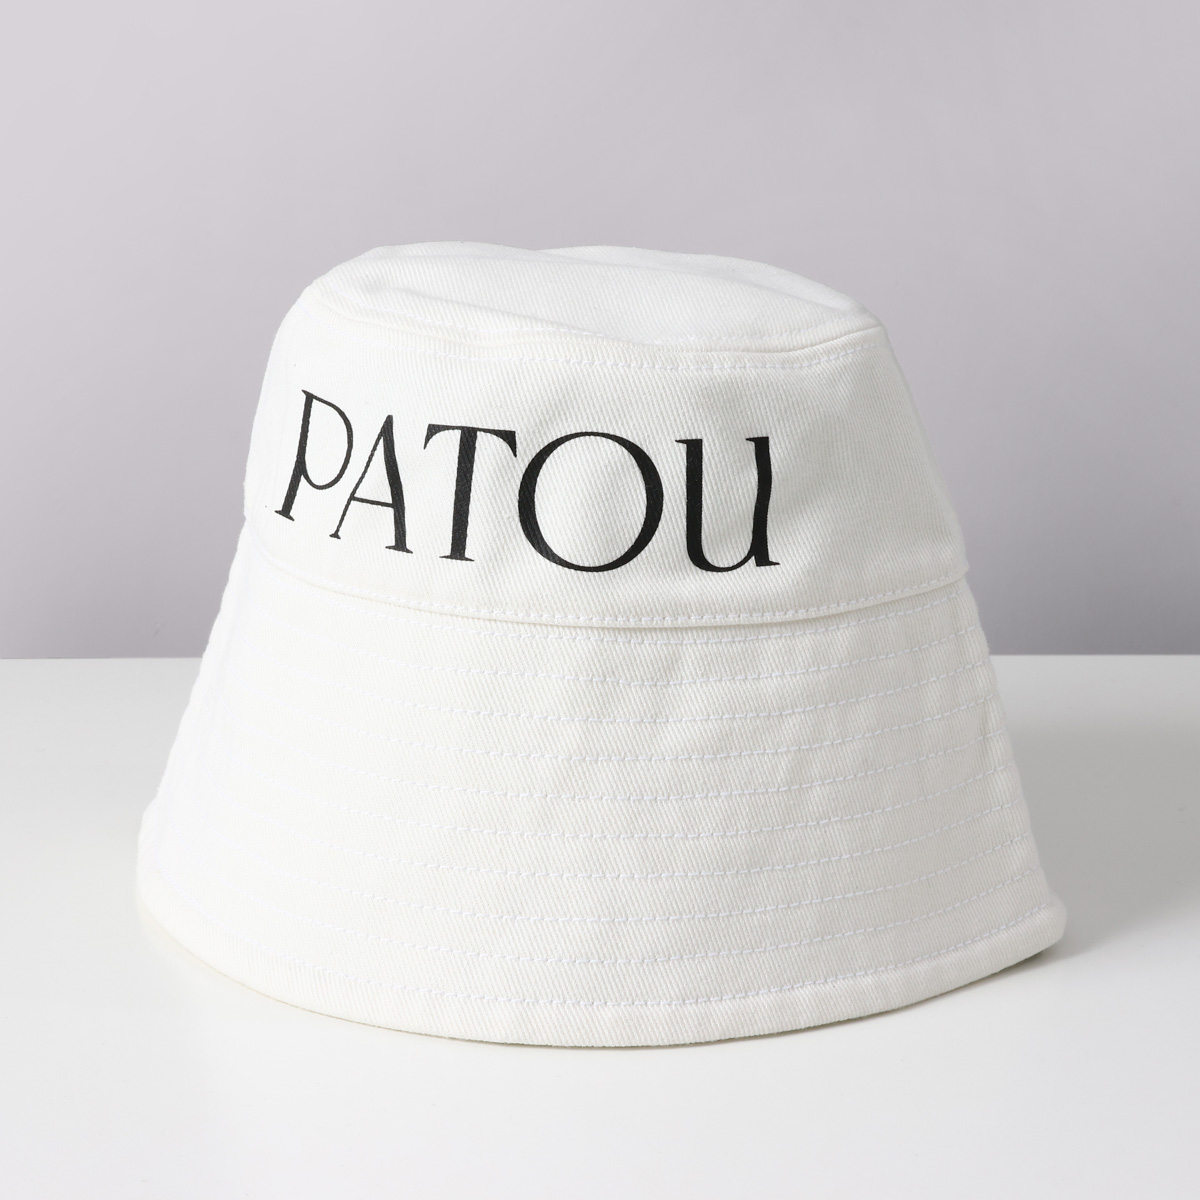 パトゥ PATOU バケットハット 帽子 ロゴ 刺繍 コットン AC027 HATS 